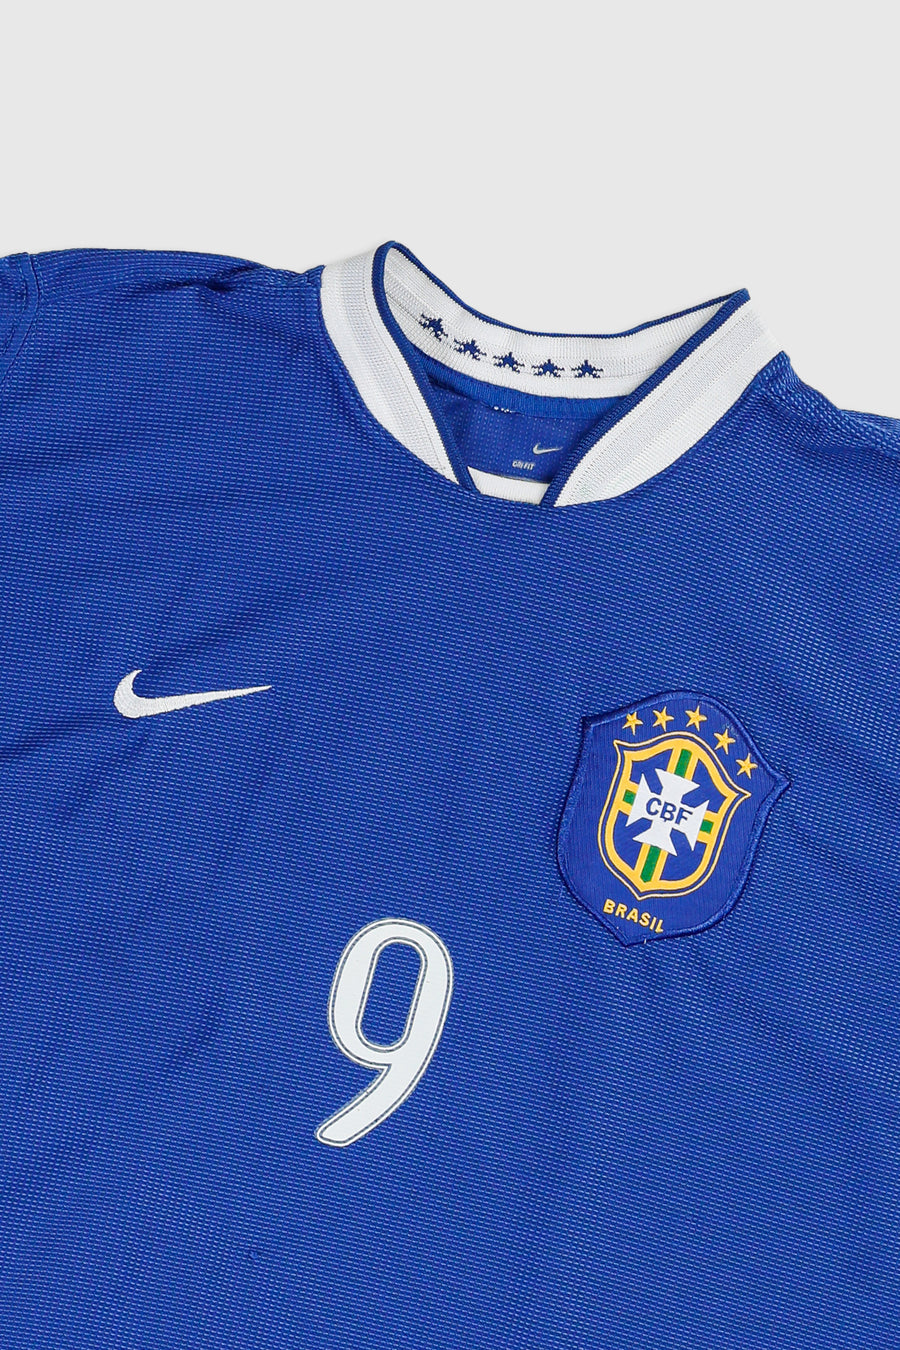 Vintage Brazil Soccer Jersey - L